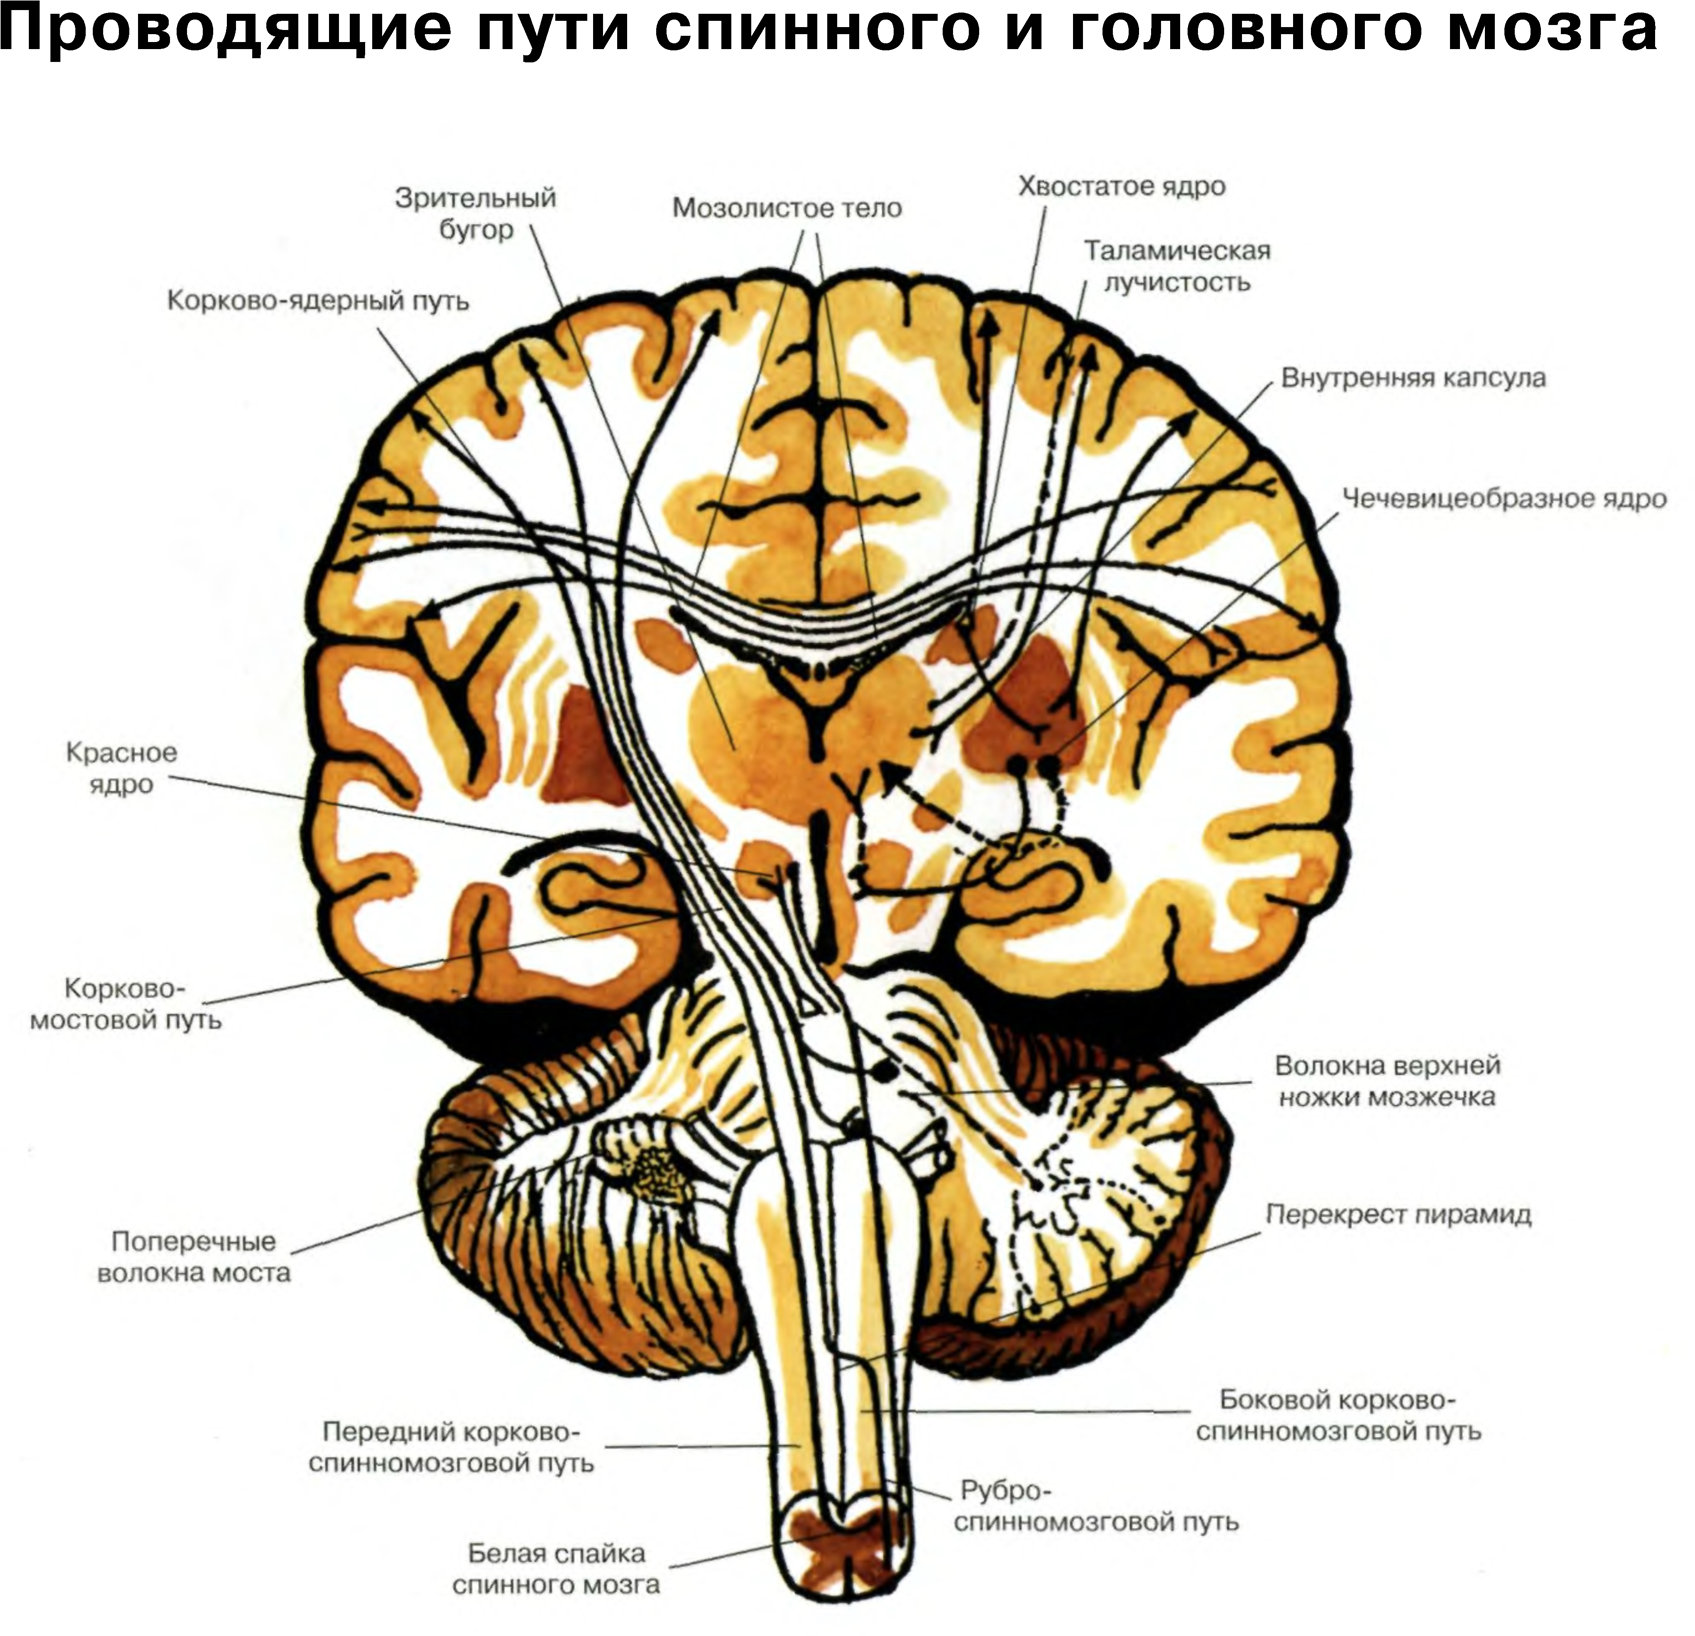 Проведенные на головном мозге. Проводящие пути головного мозга восходящие и нисходящие. Чувствительные проводящие пути спинного и головного мозга анатомия. Схему восходящих путей спинного и головного мозга.. Проводящие пути спинной мозг анатомия строение.